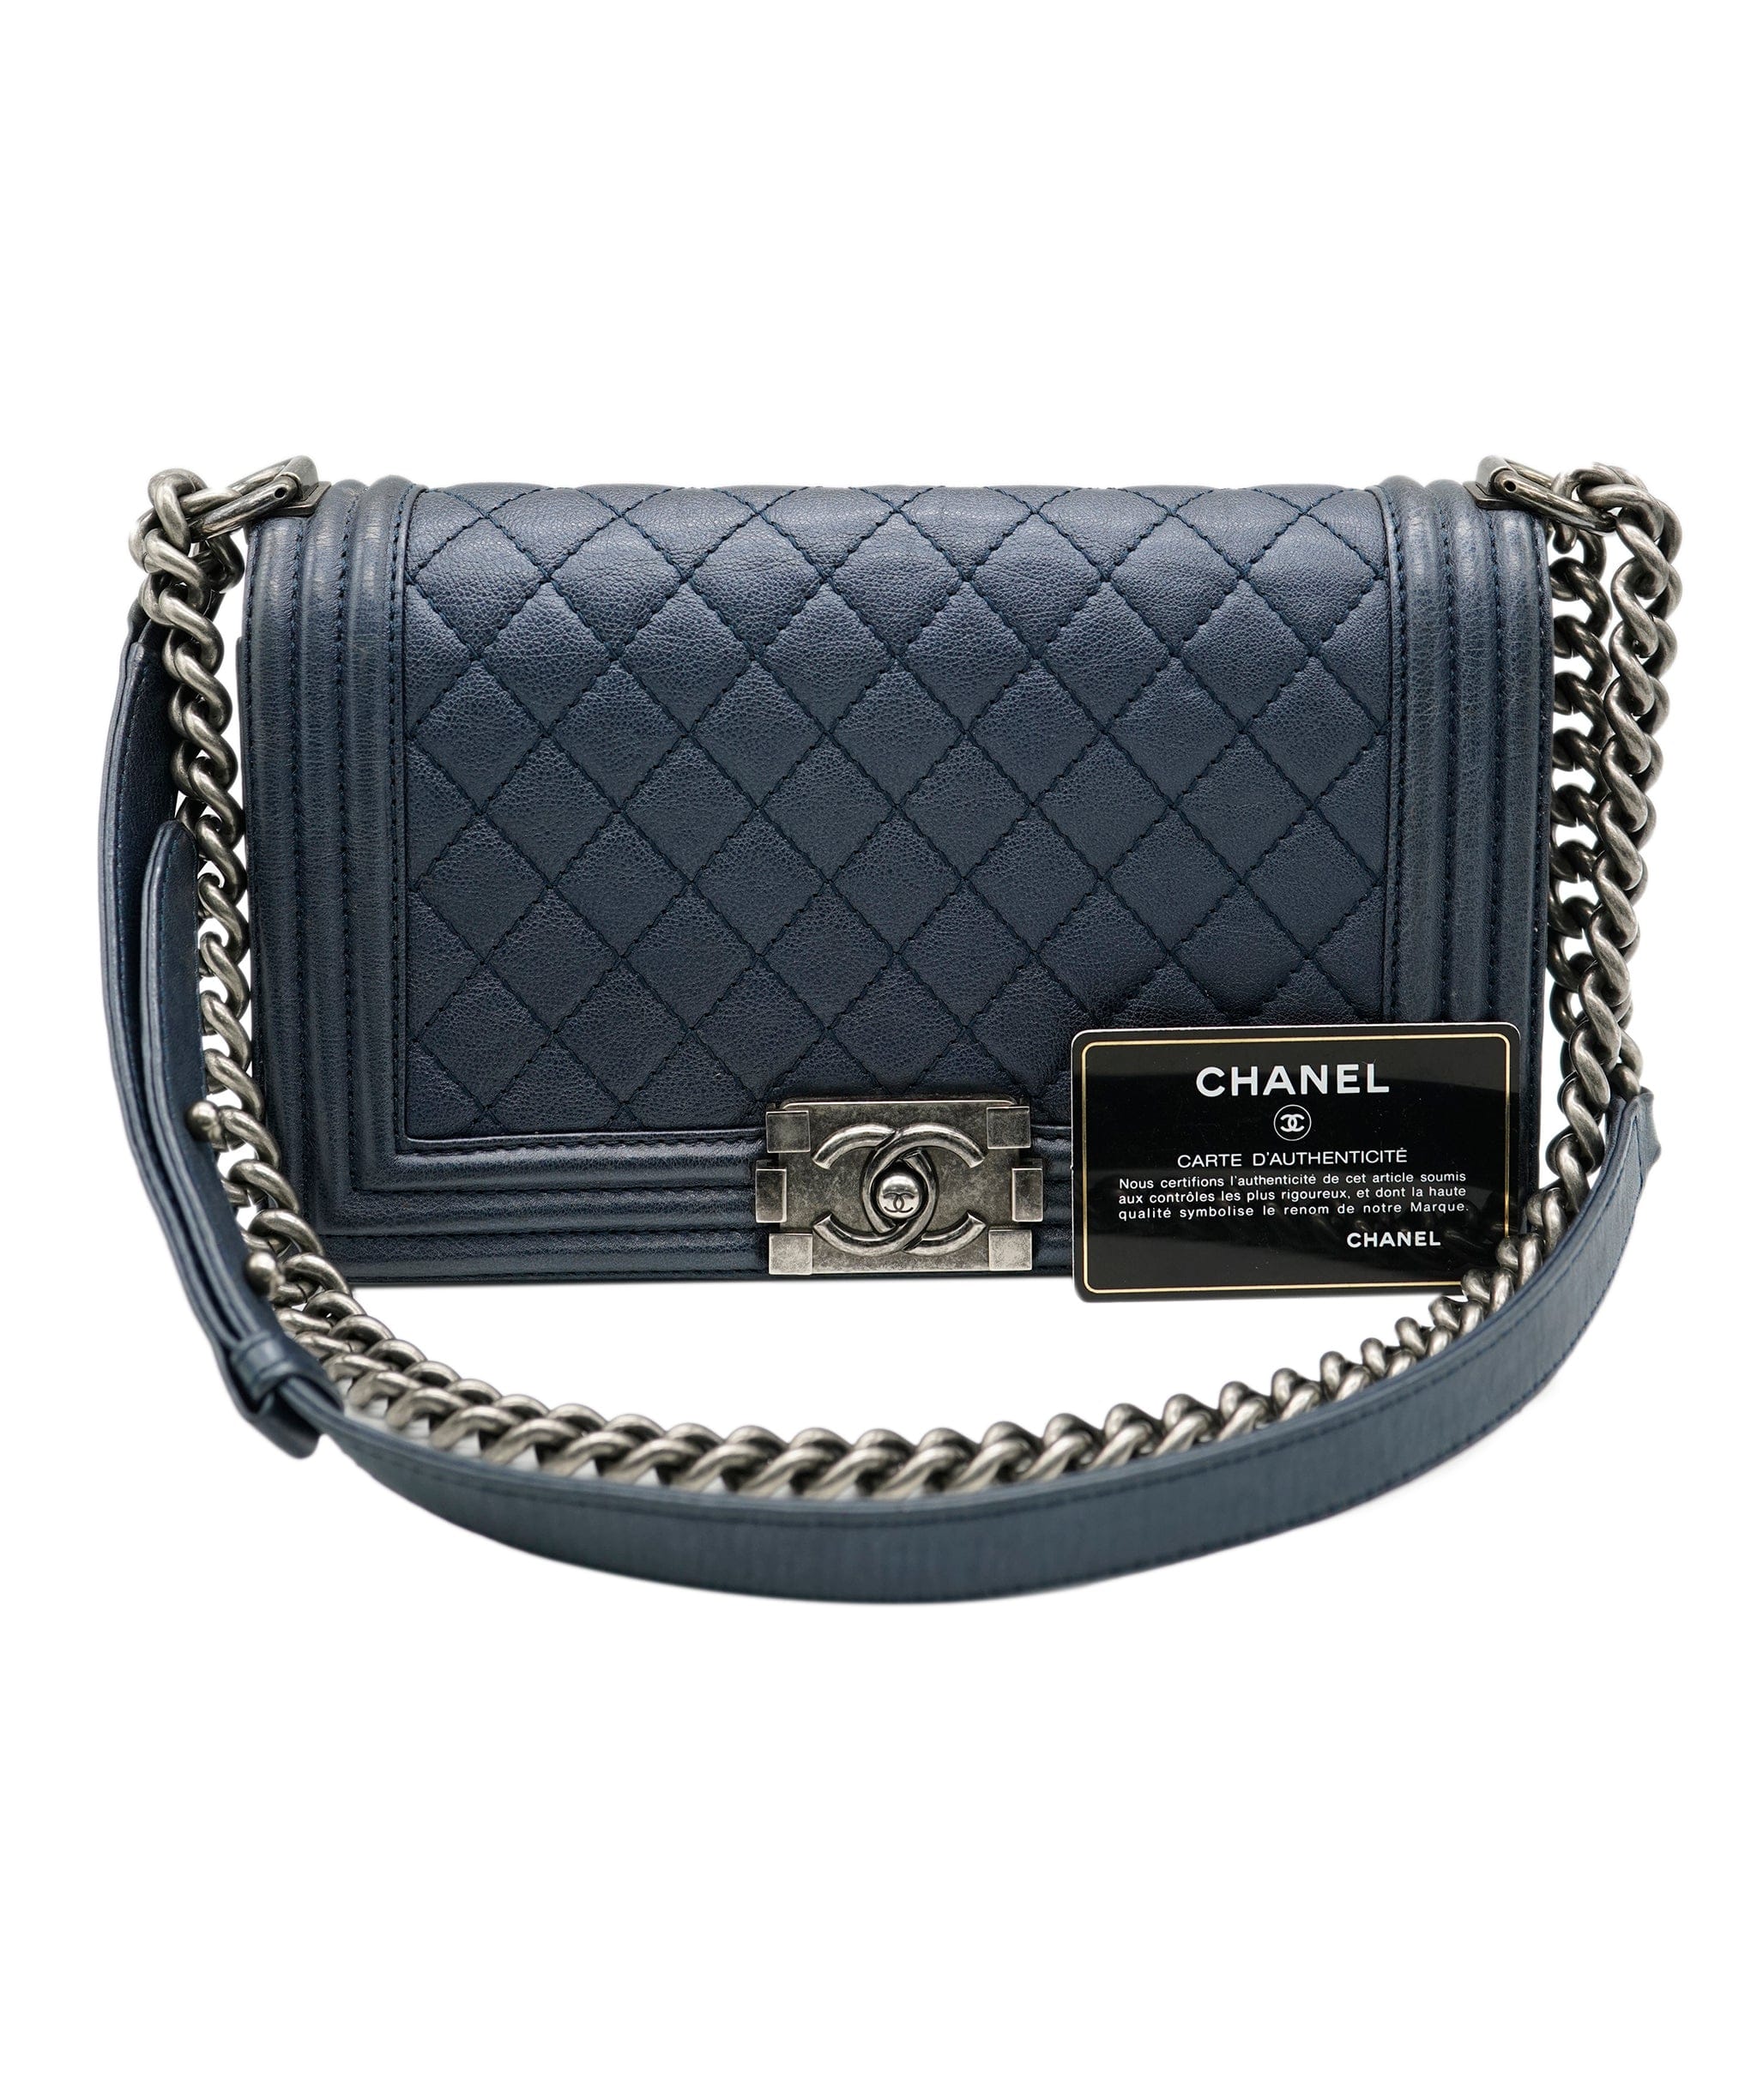 Chanel Chanel navy boy bag  ALC0441